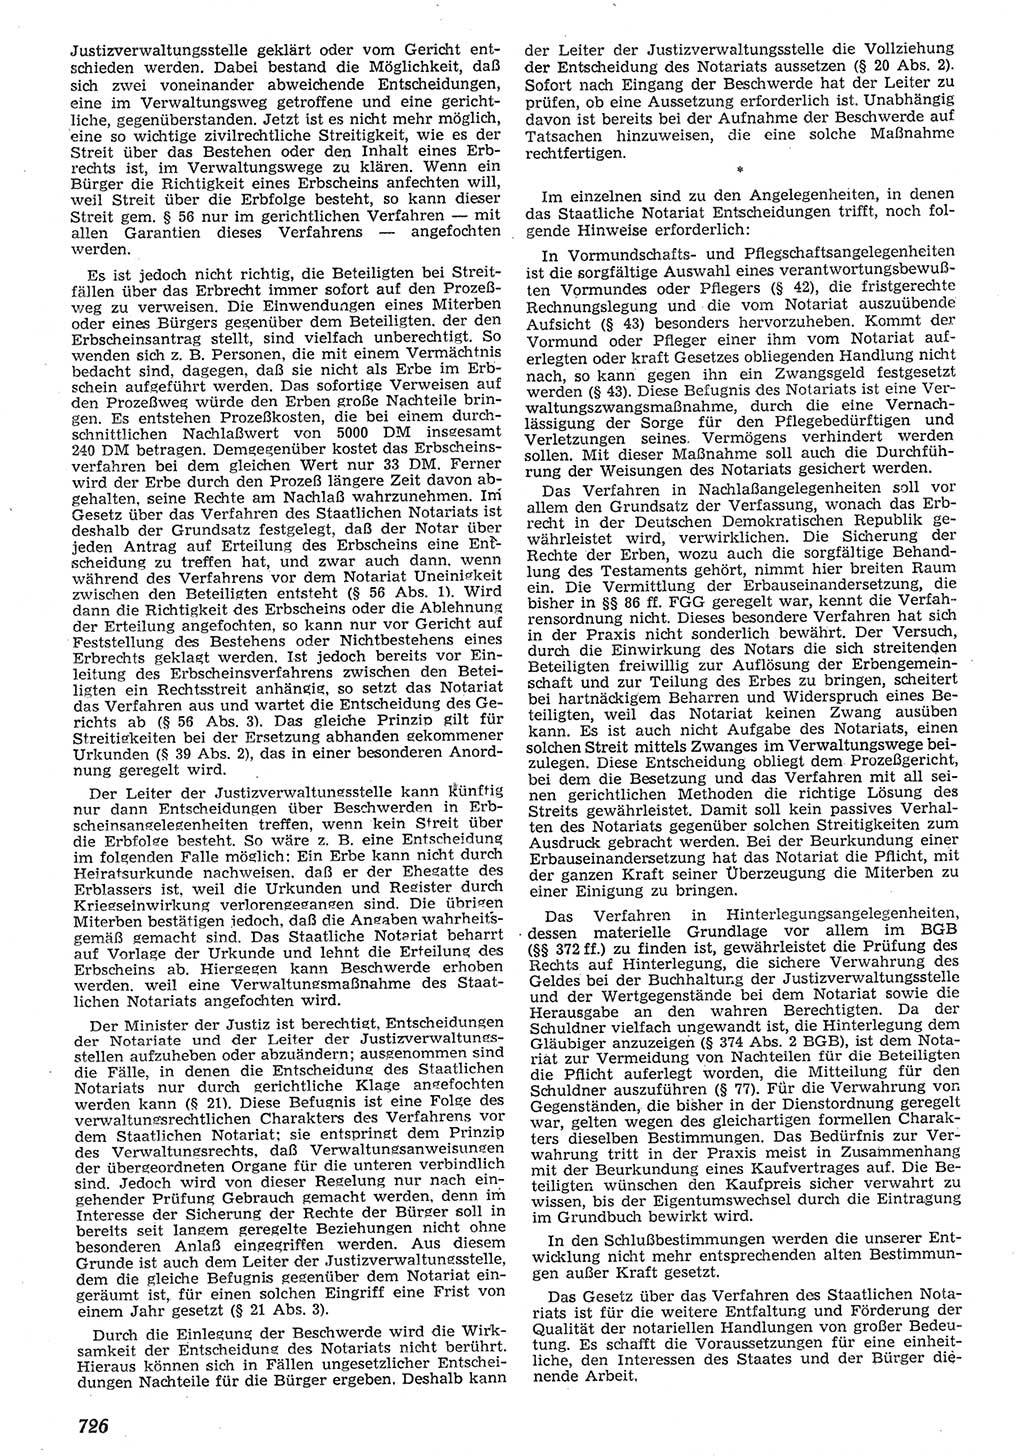 Neue Justiz (NJ), Zeitschrift für Recht und Rechtswissenschaft [Deutsche Demokratische Republik (DDR)], 10. Jahrgang 1956, Seite 726 (NJ DDR 1956, S. 726)